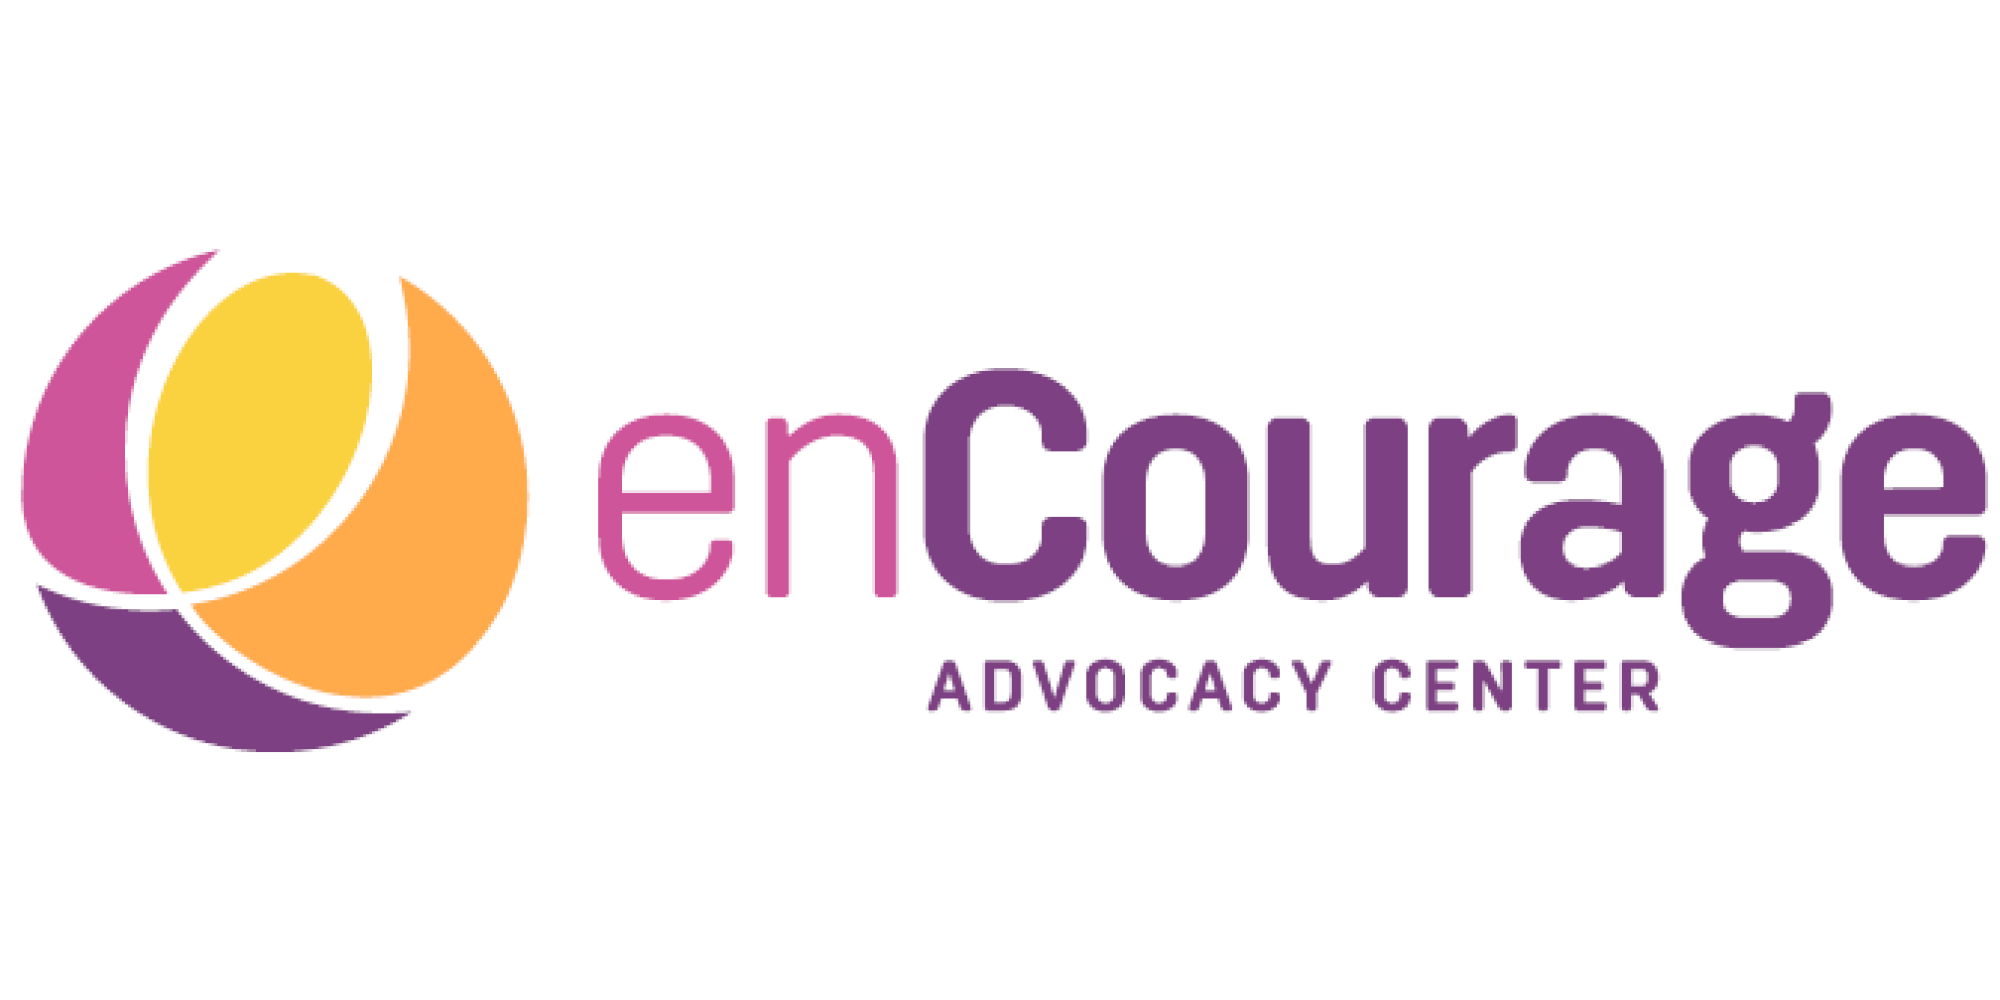 enCourage Advocacy Center